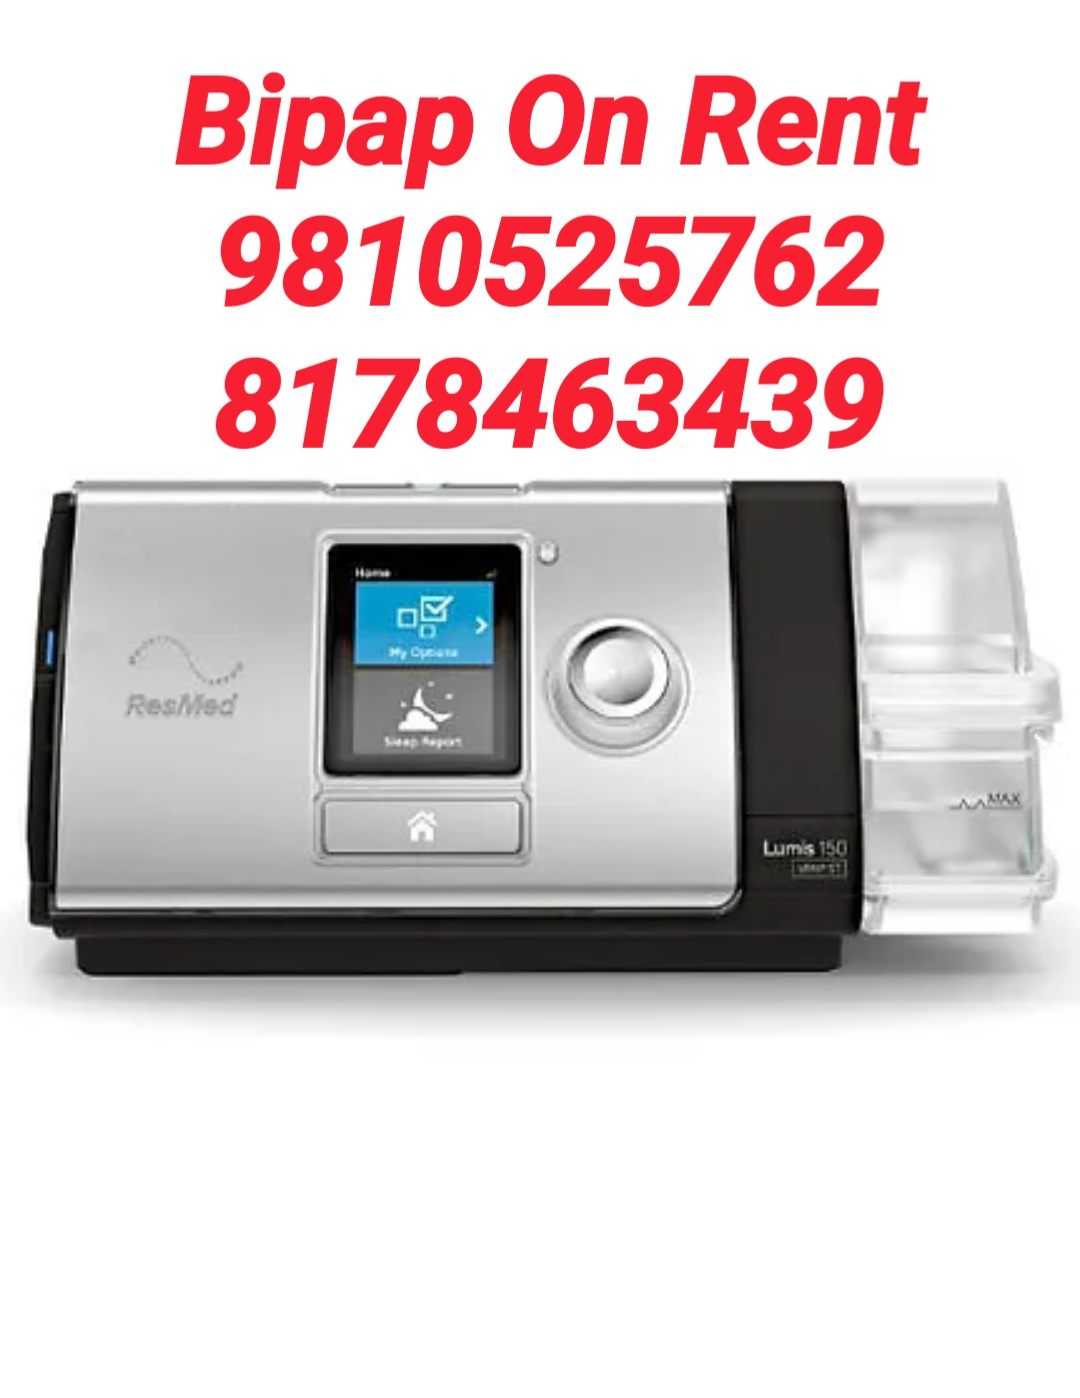 Bipap Machine For Rent in Delhi Noida Ghaziabad 9810525762